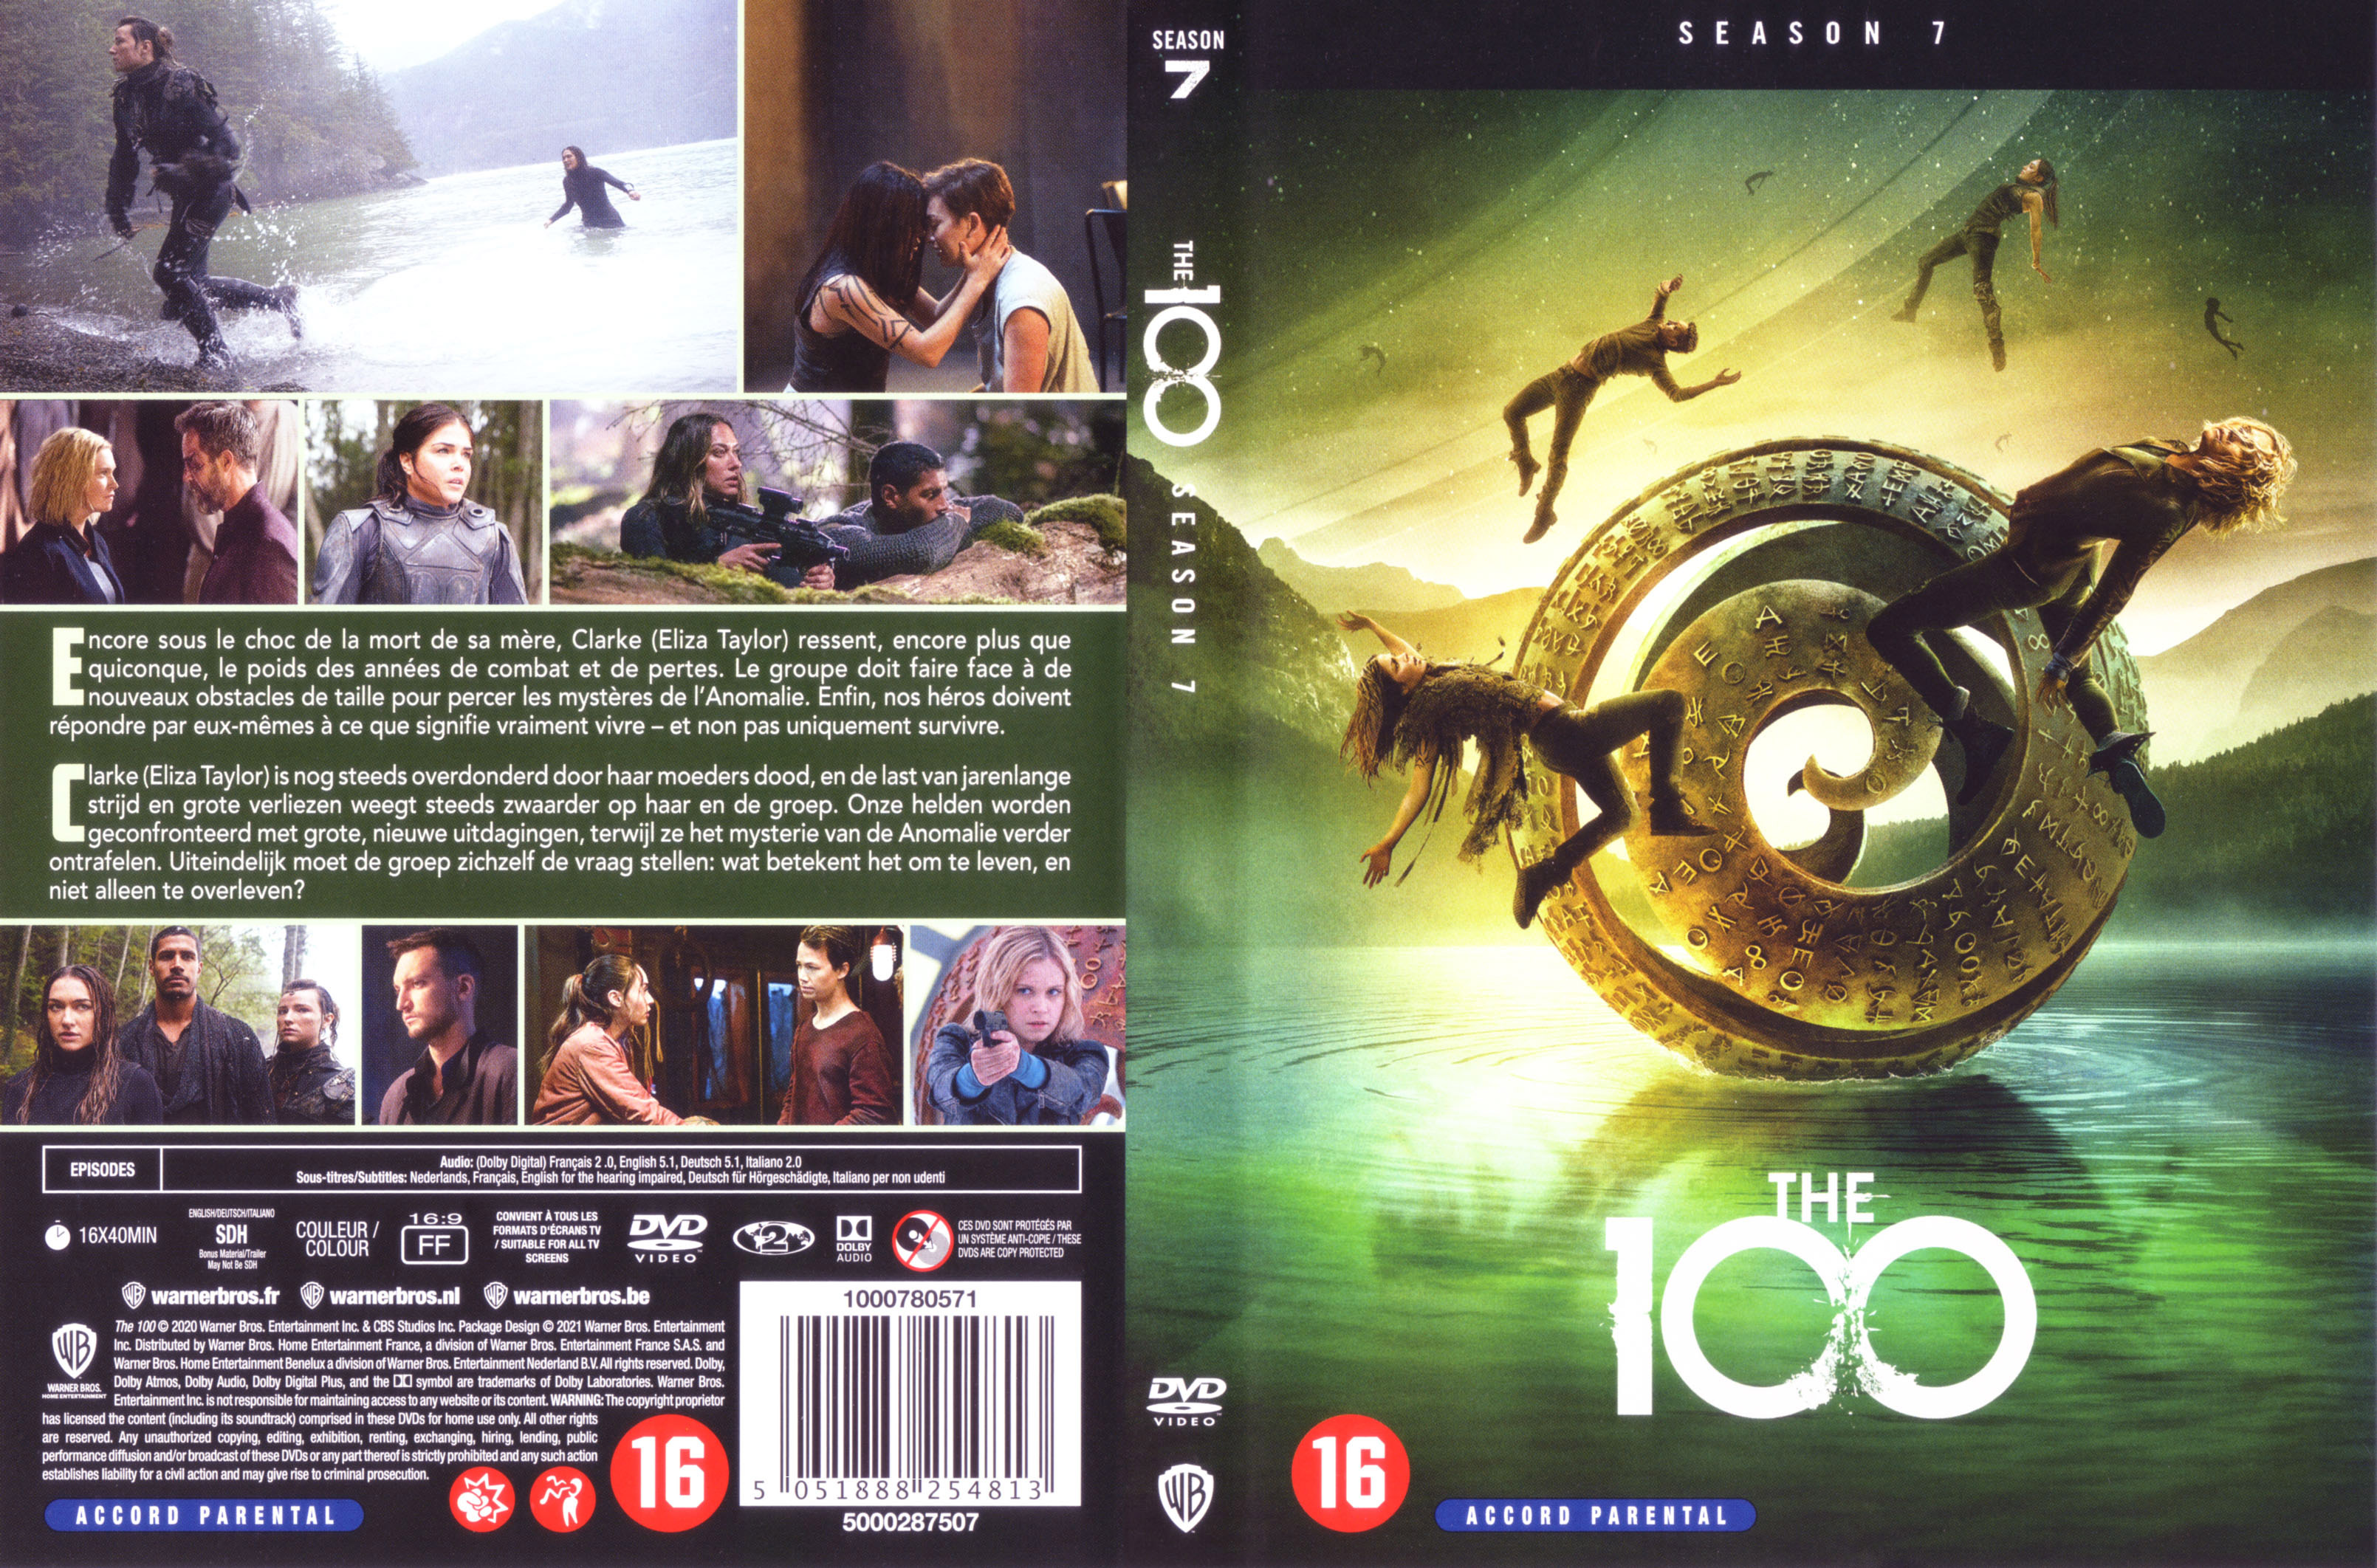 Jaquette DVD The 100 Saison 7